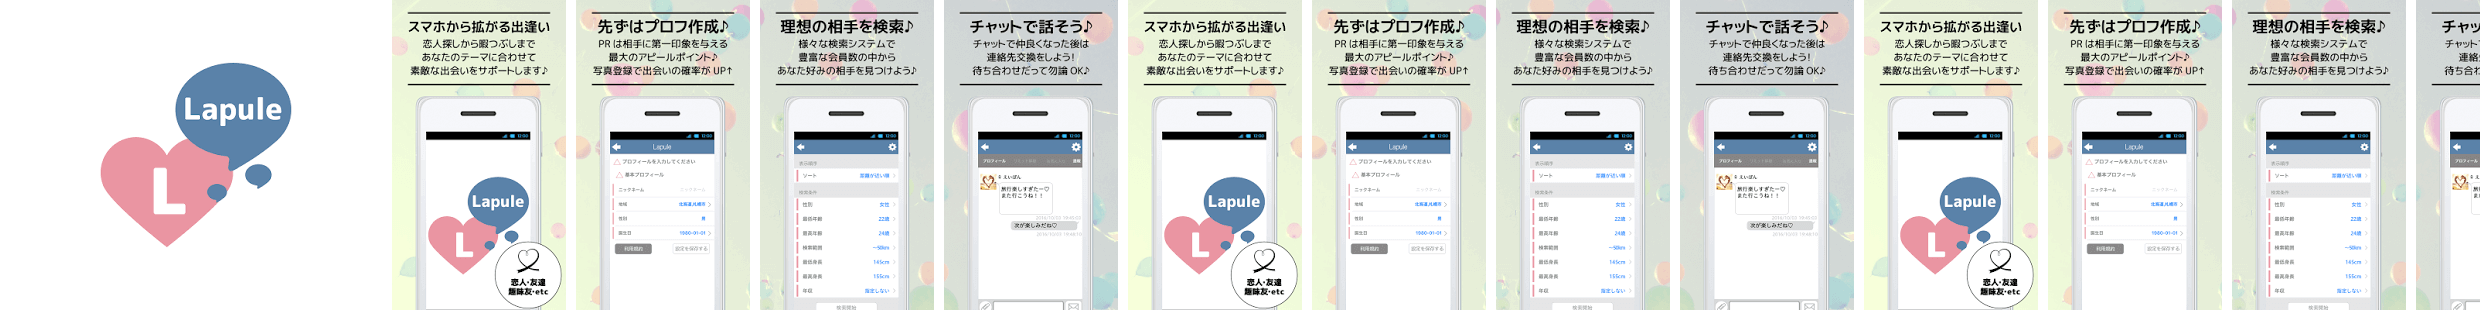 ひまなら出会い系Lapule友達・恋人探しするチャットアプリ